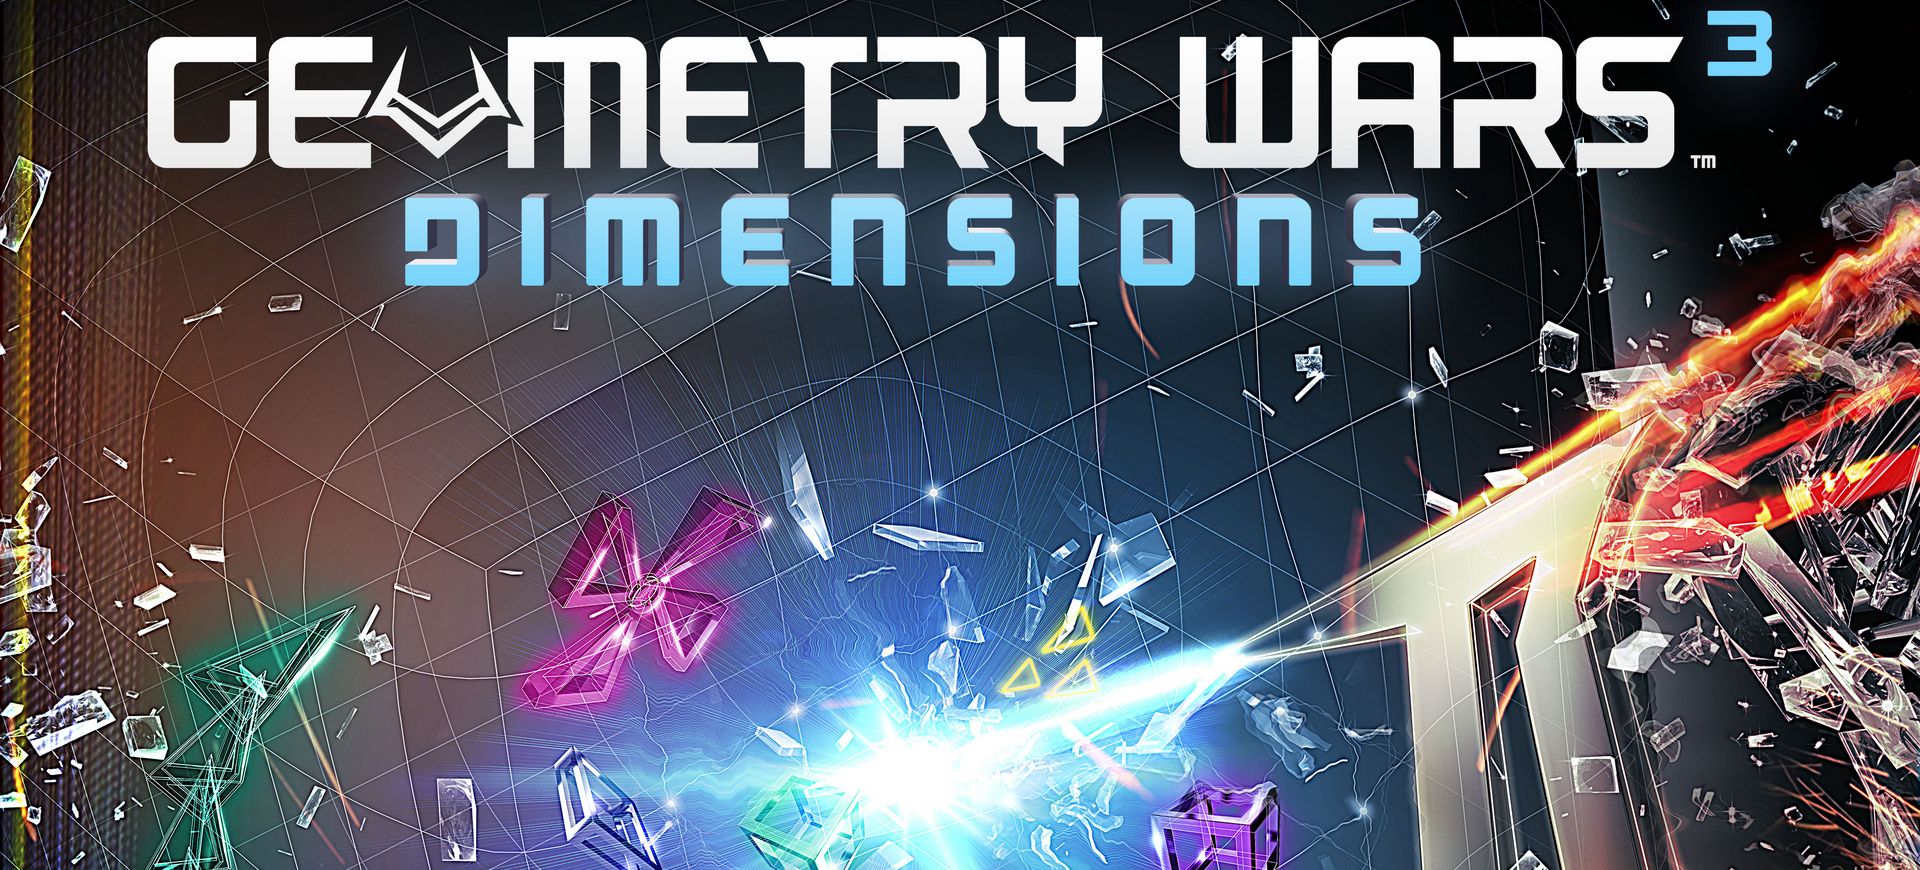 Geometry Wars 3: Dimensions - Đánh Giá Game